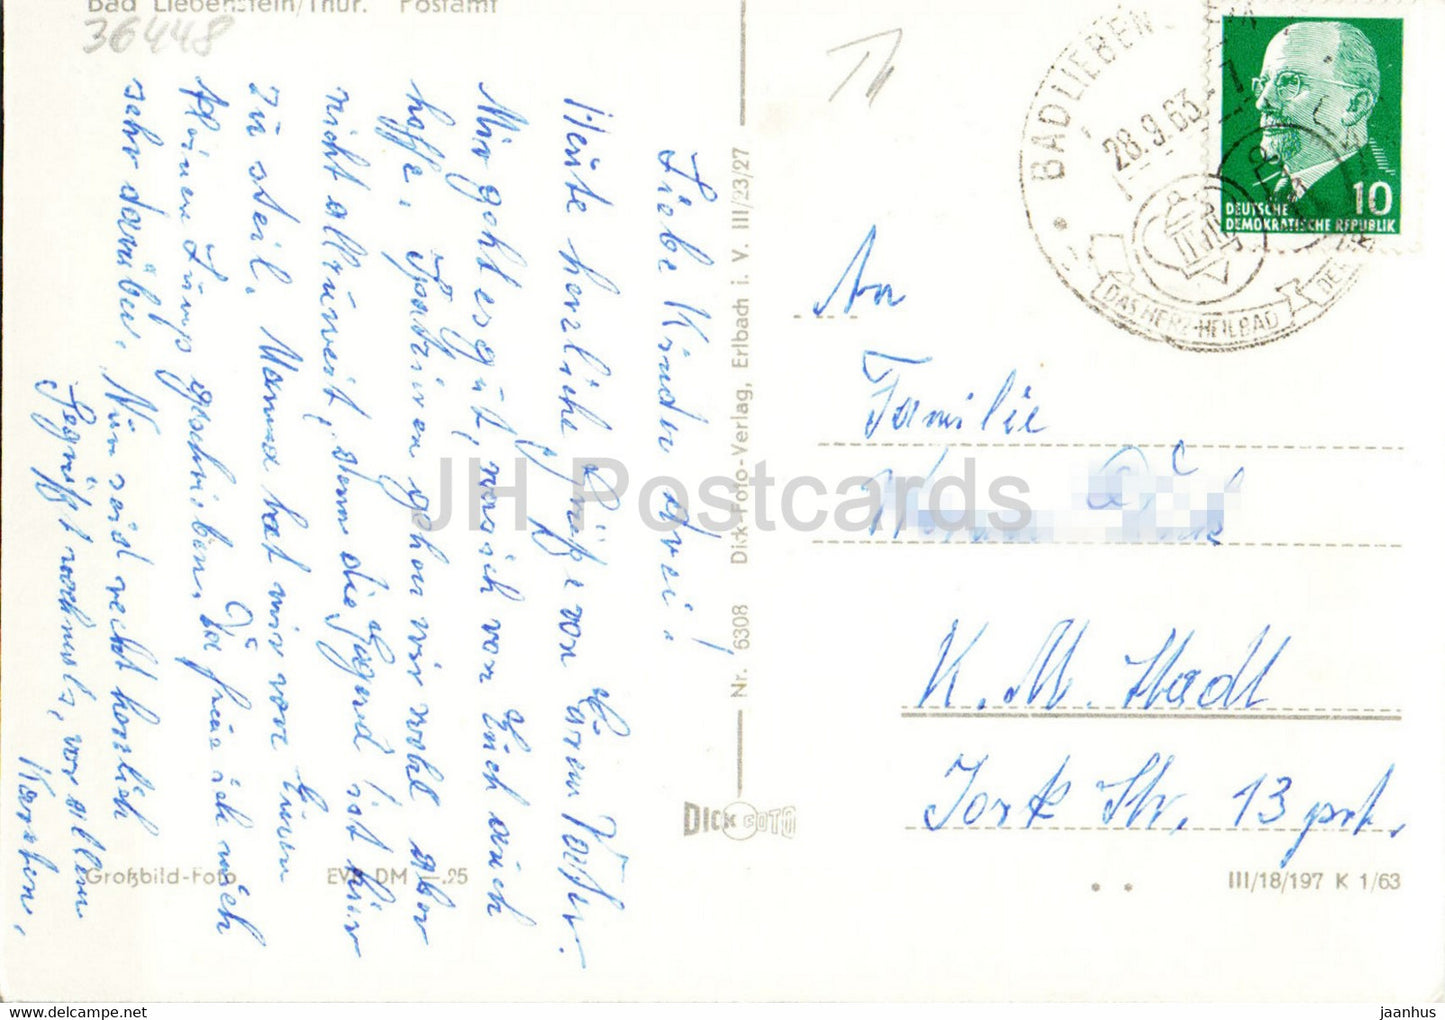 Bad Liebenstein - Postamt - Postamt - Auto - alte Postkarte - 1963 - Deutschland DDR - gebraucht